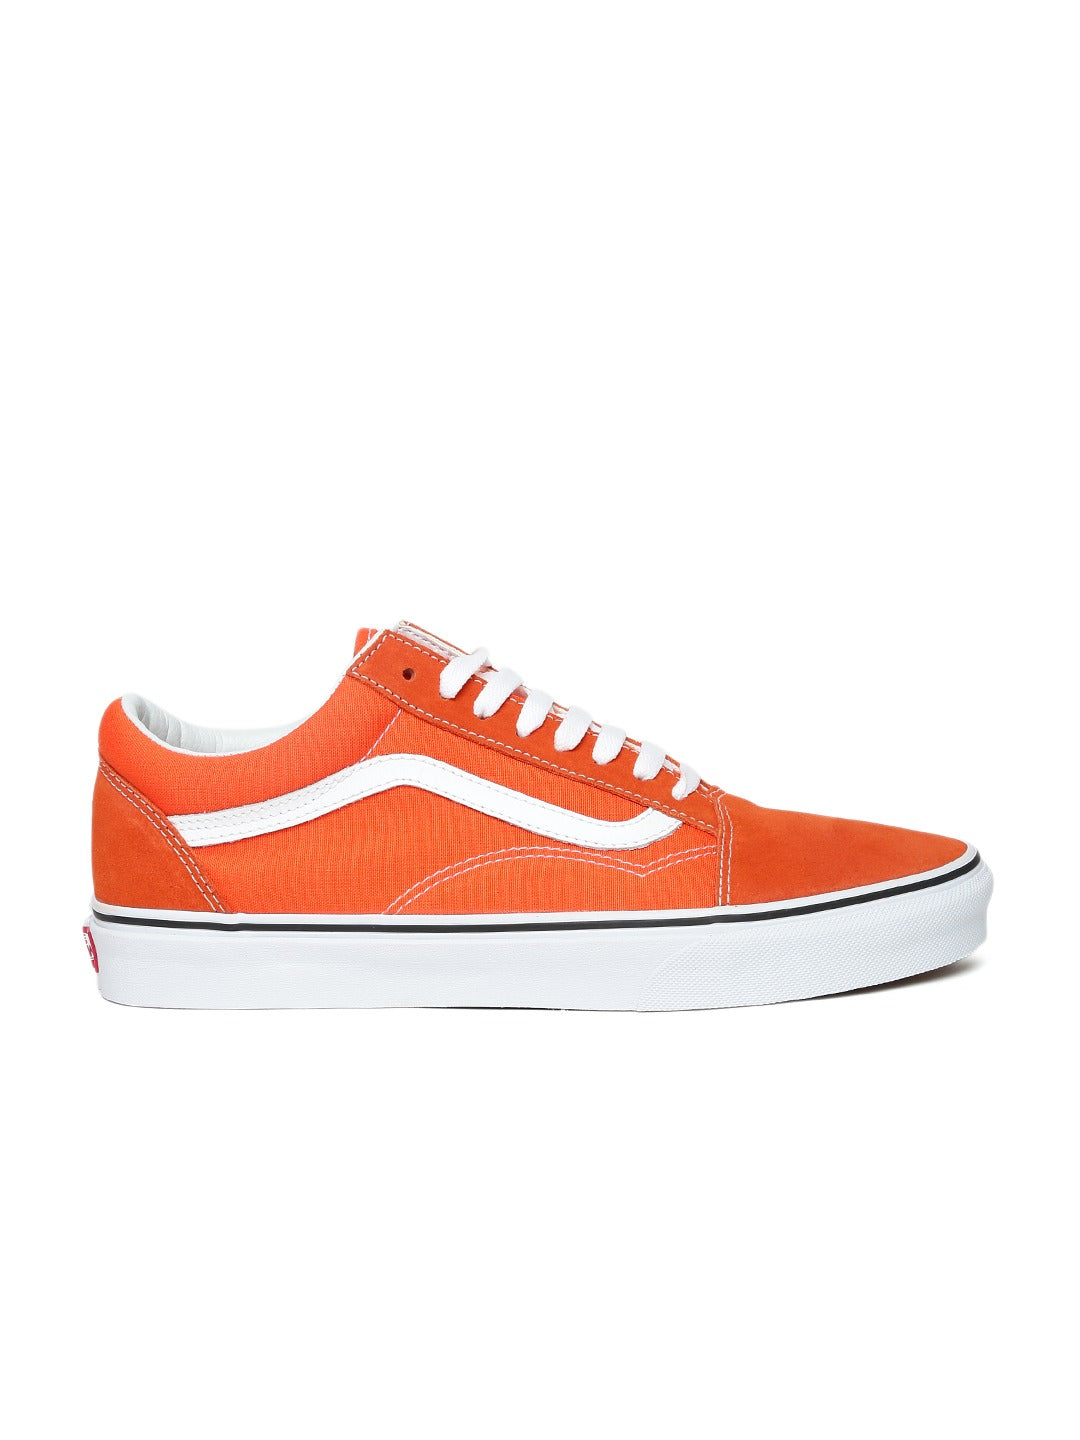 Orange Old Skool Sneakers